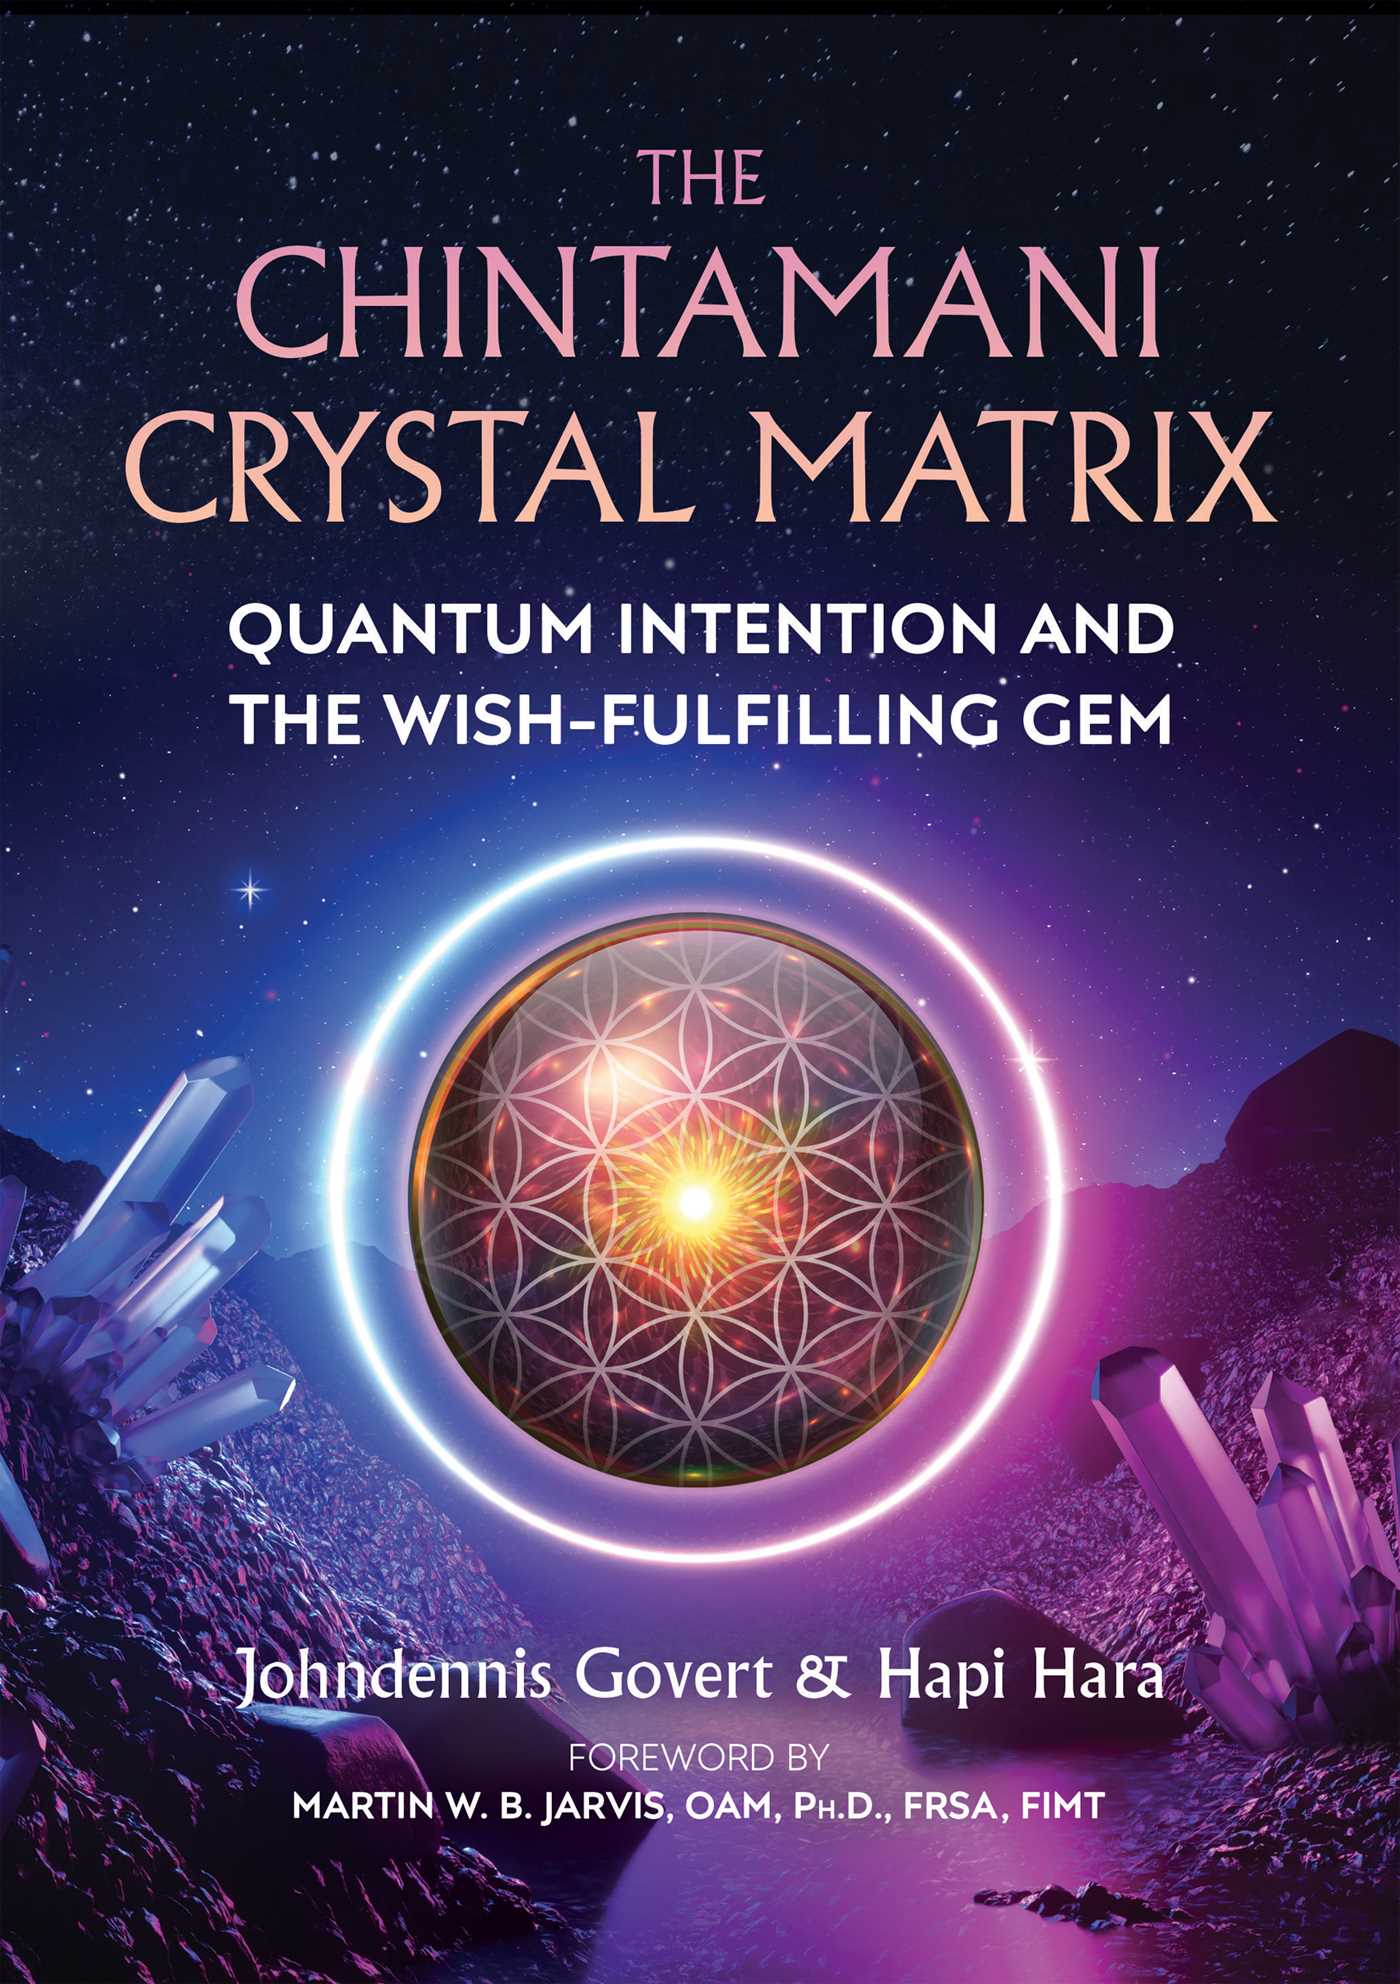 The Chintamani Crystal Matrix; Johndennis Govert & Hapi Hara